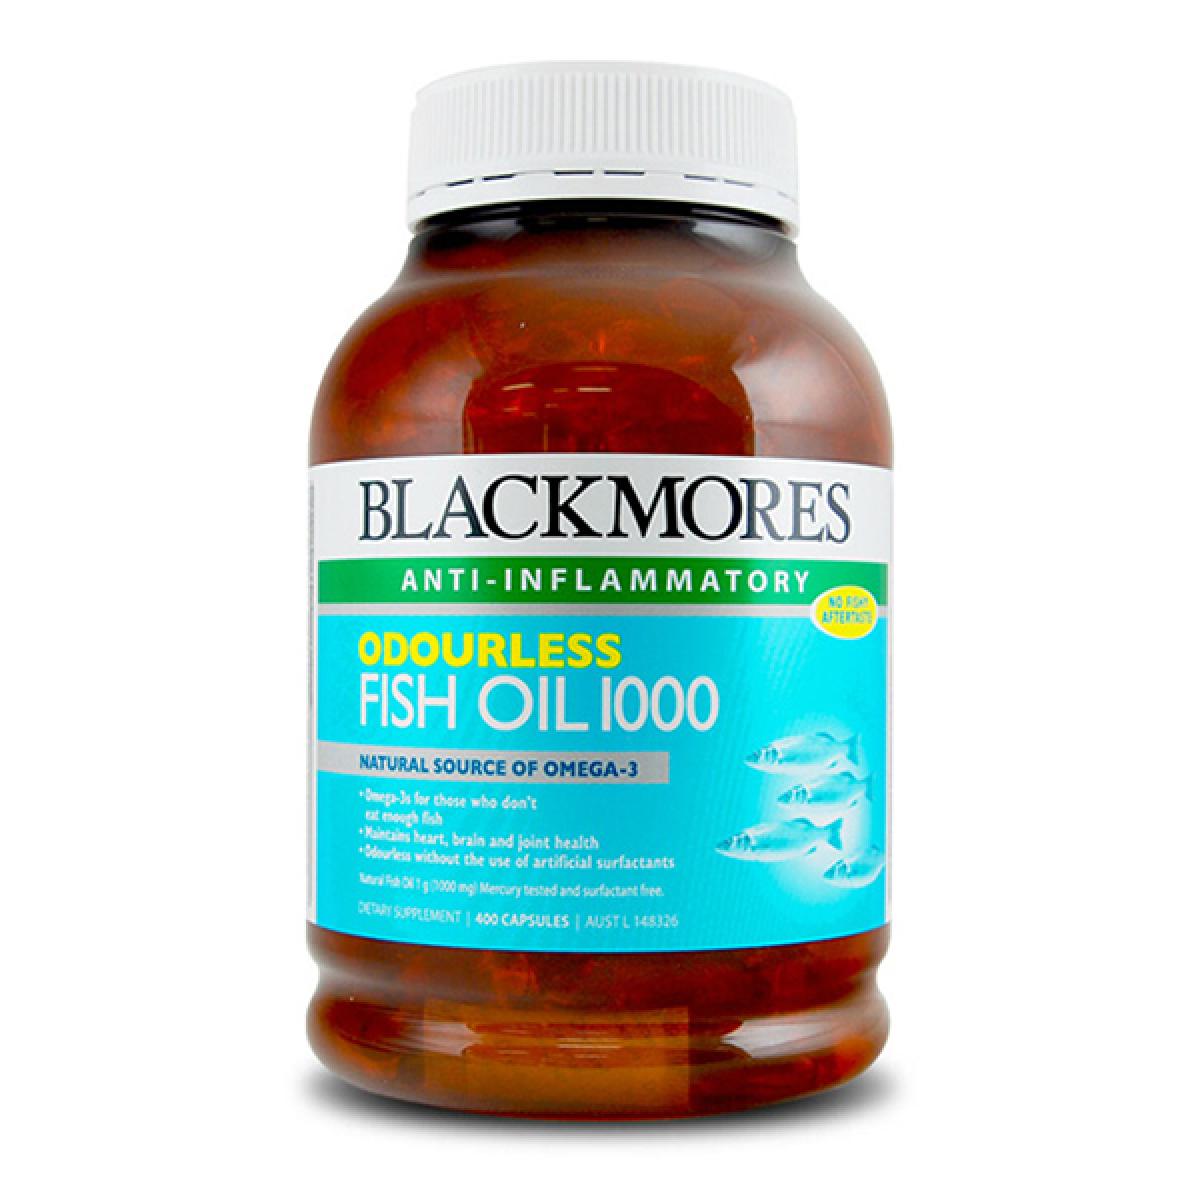 【全球购】2瓶装 BLACKMORES ODOURLESS Fish Oil 无腥味深海鱼油软胶囊 400粒